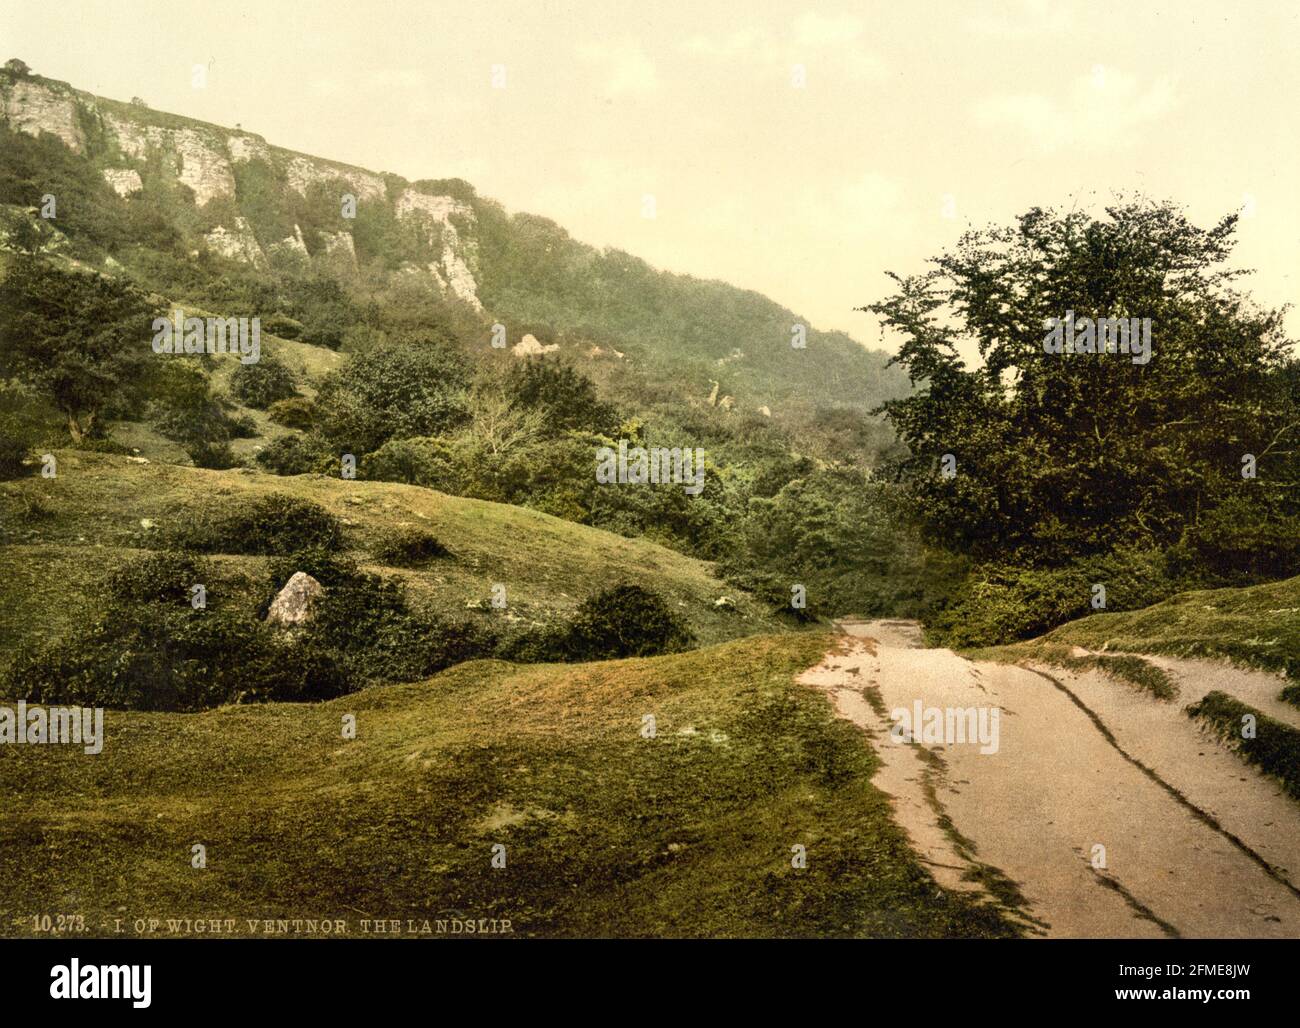 Glissement de terrain Bonchurch (ou glissement de terrain East End) Près de l'île de Ventnor de Wight vers 1890-1900 Banque D'Images